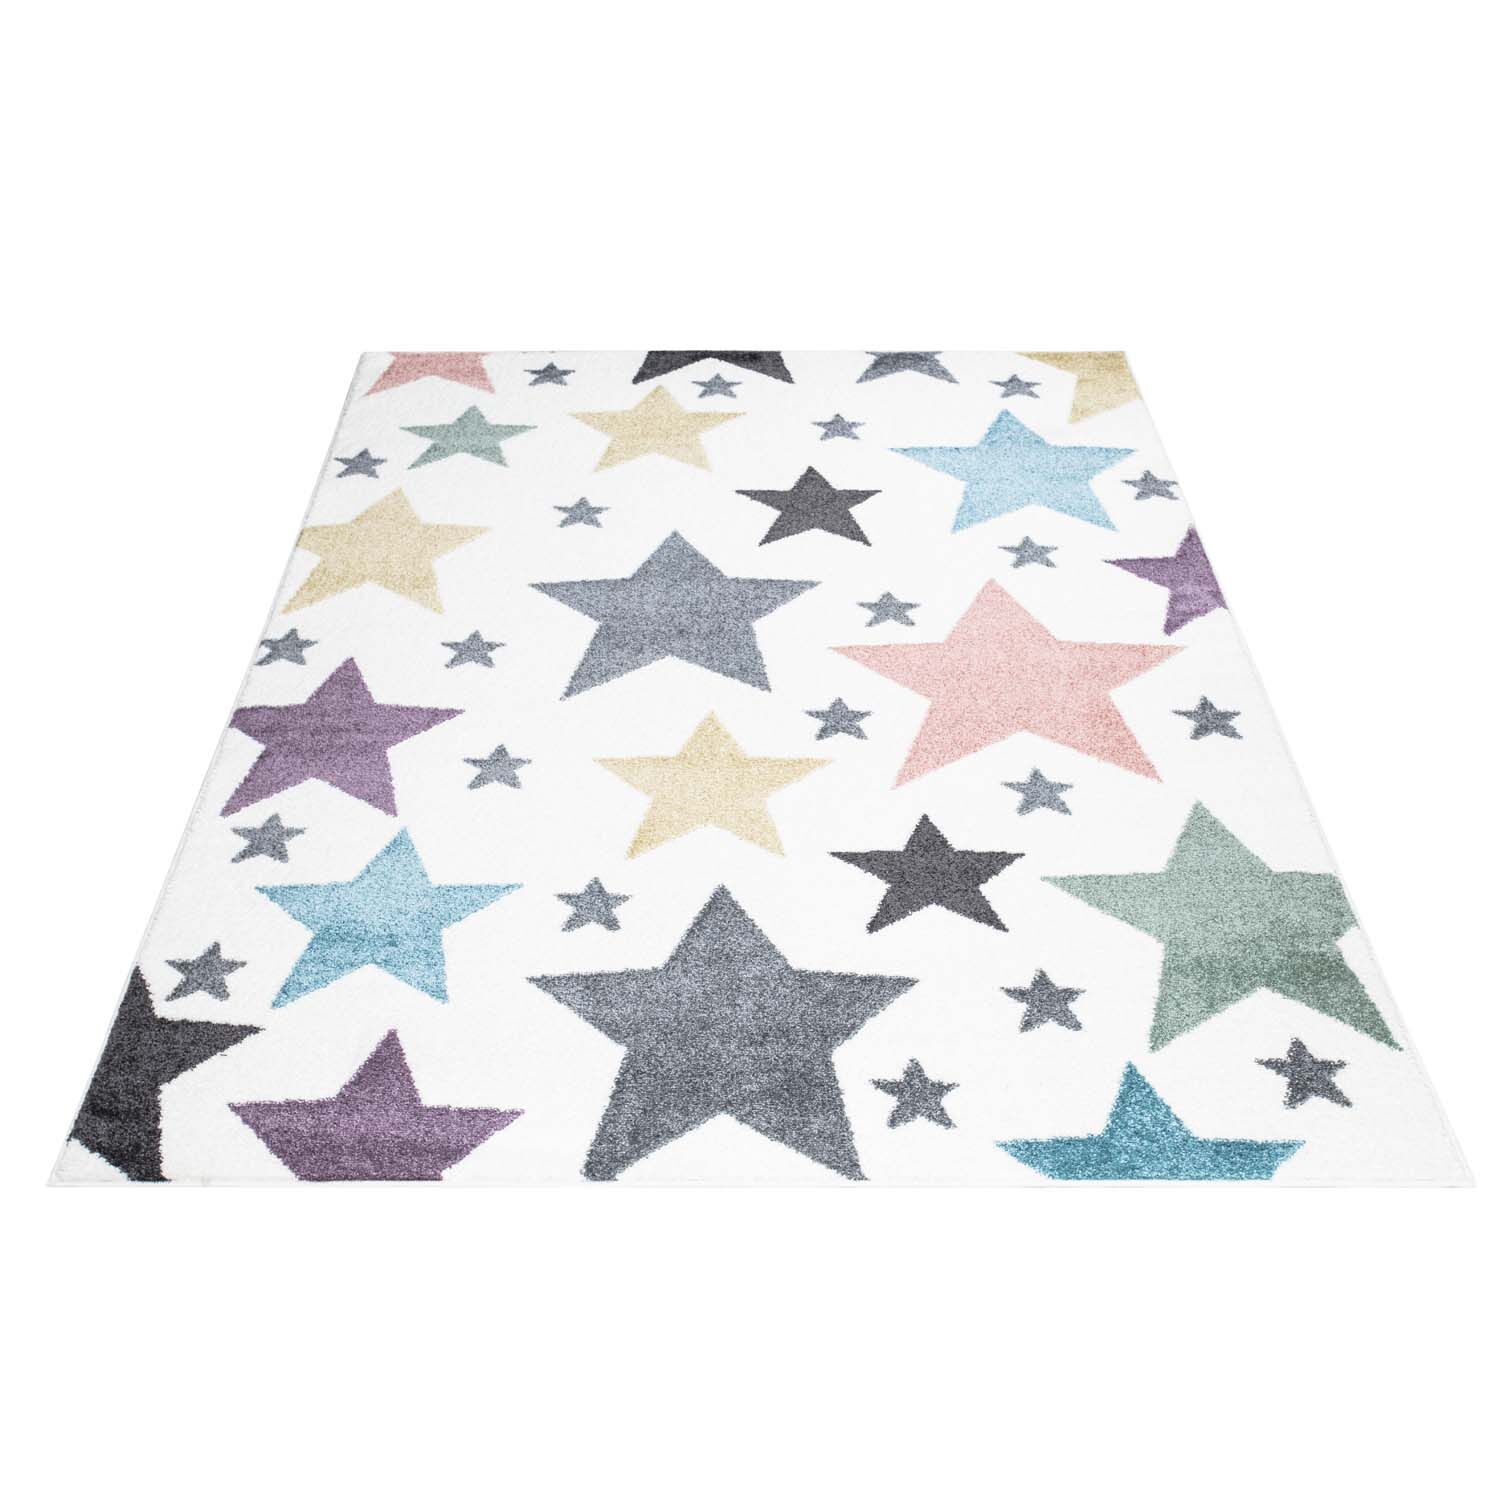 Kinderteppich Sterne Bunt 160x230 7